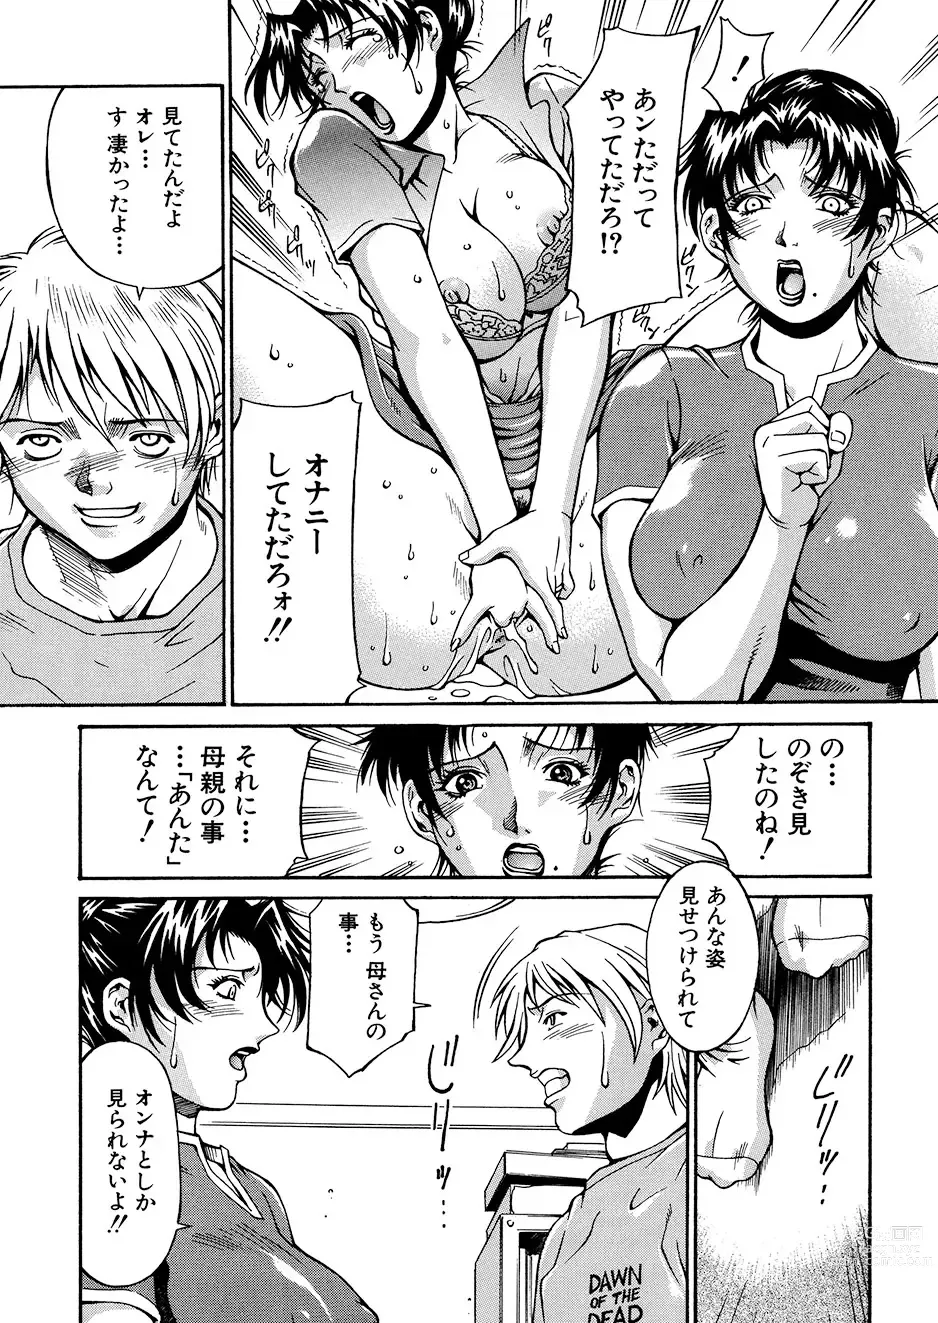 Page 174 of manga Mechiku